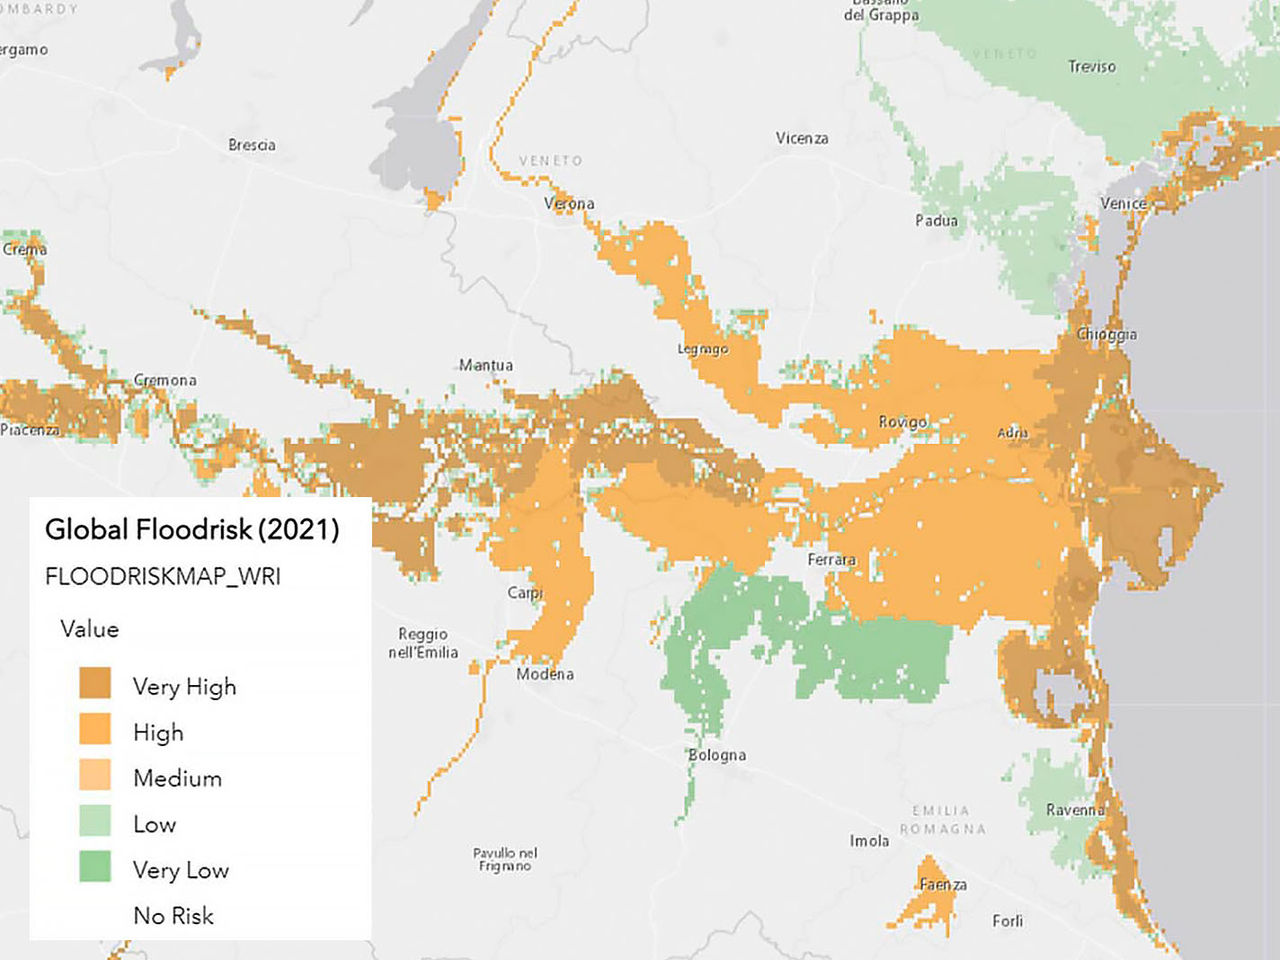 Mappa colorata dei rischi di alluvioni, parte della valutazione del rischio climatico